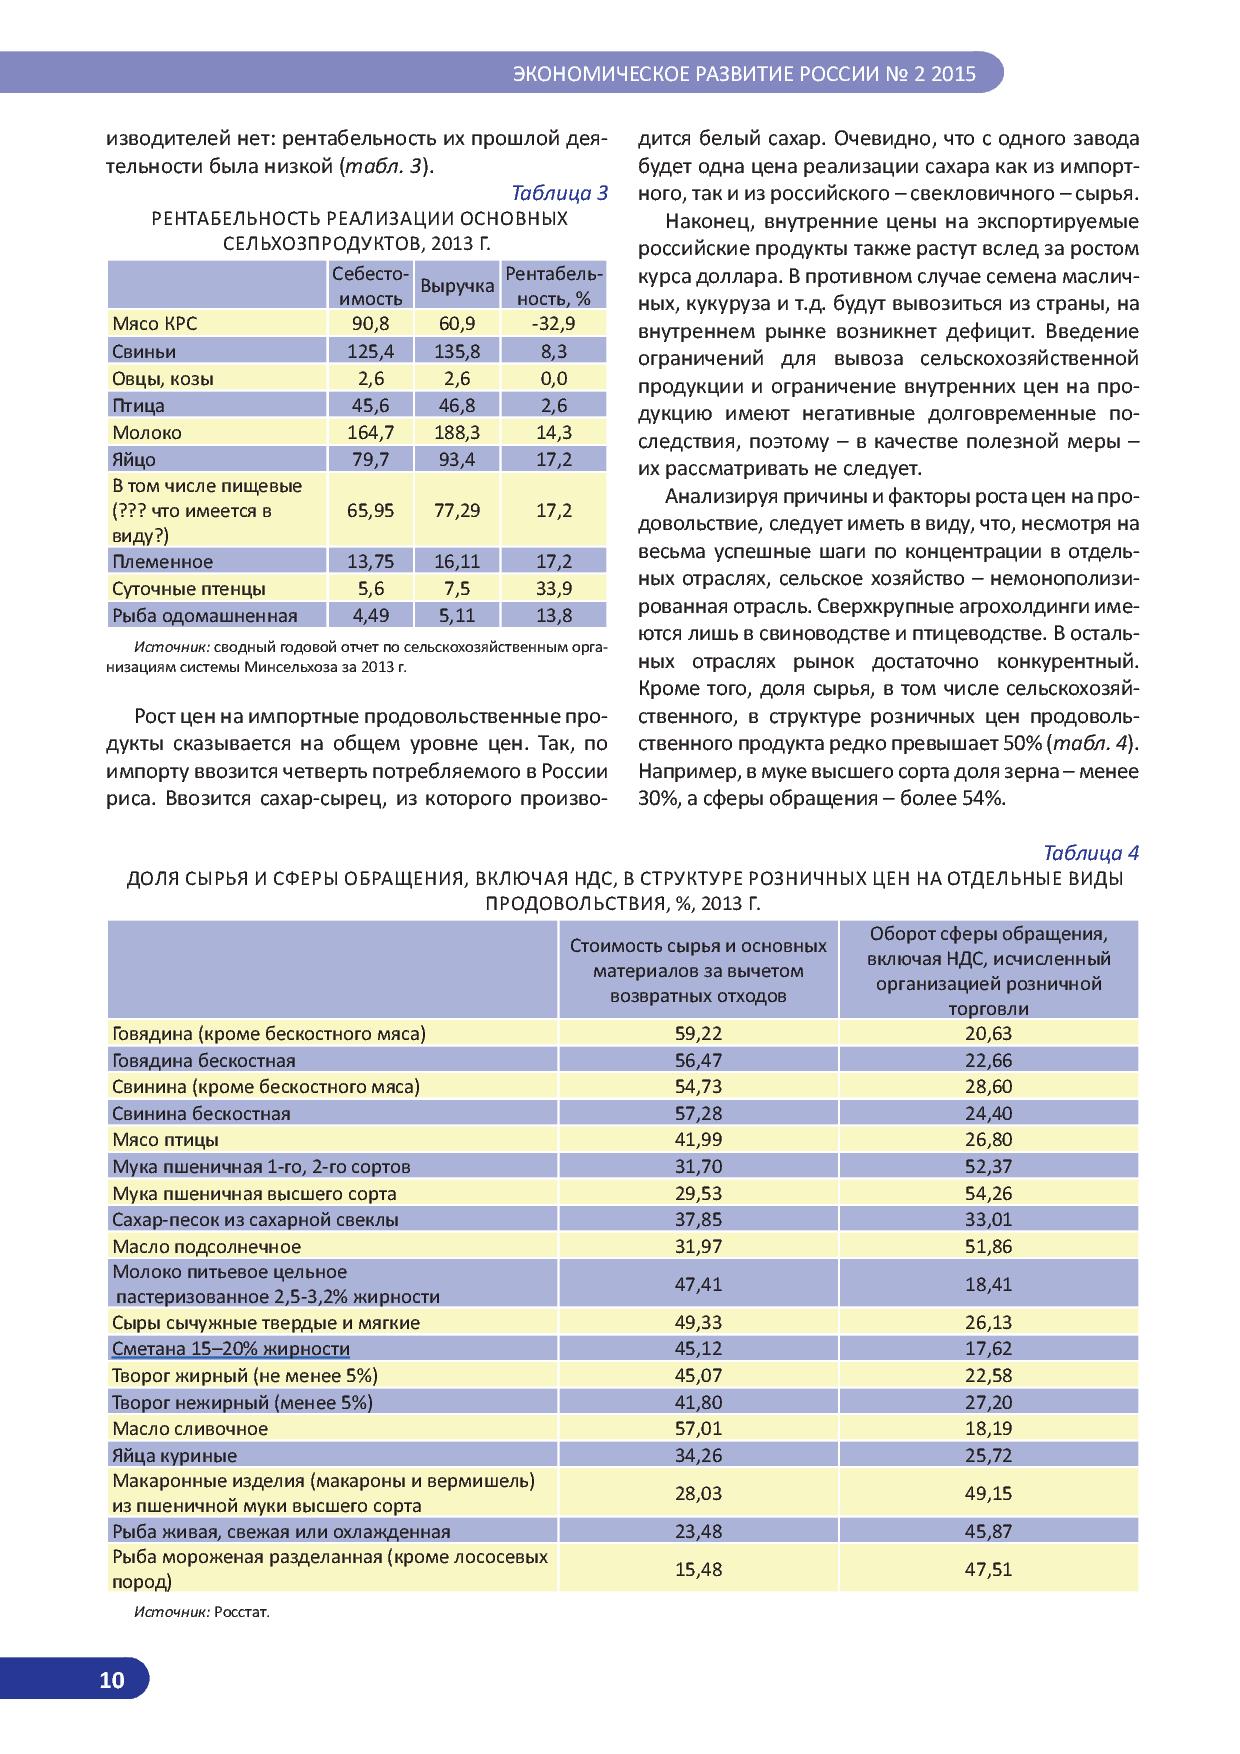   Оперативный мониторинг экономической ситуации в России. Тенденции и вызовы социально-экономического развития  - фото 11